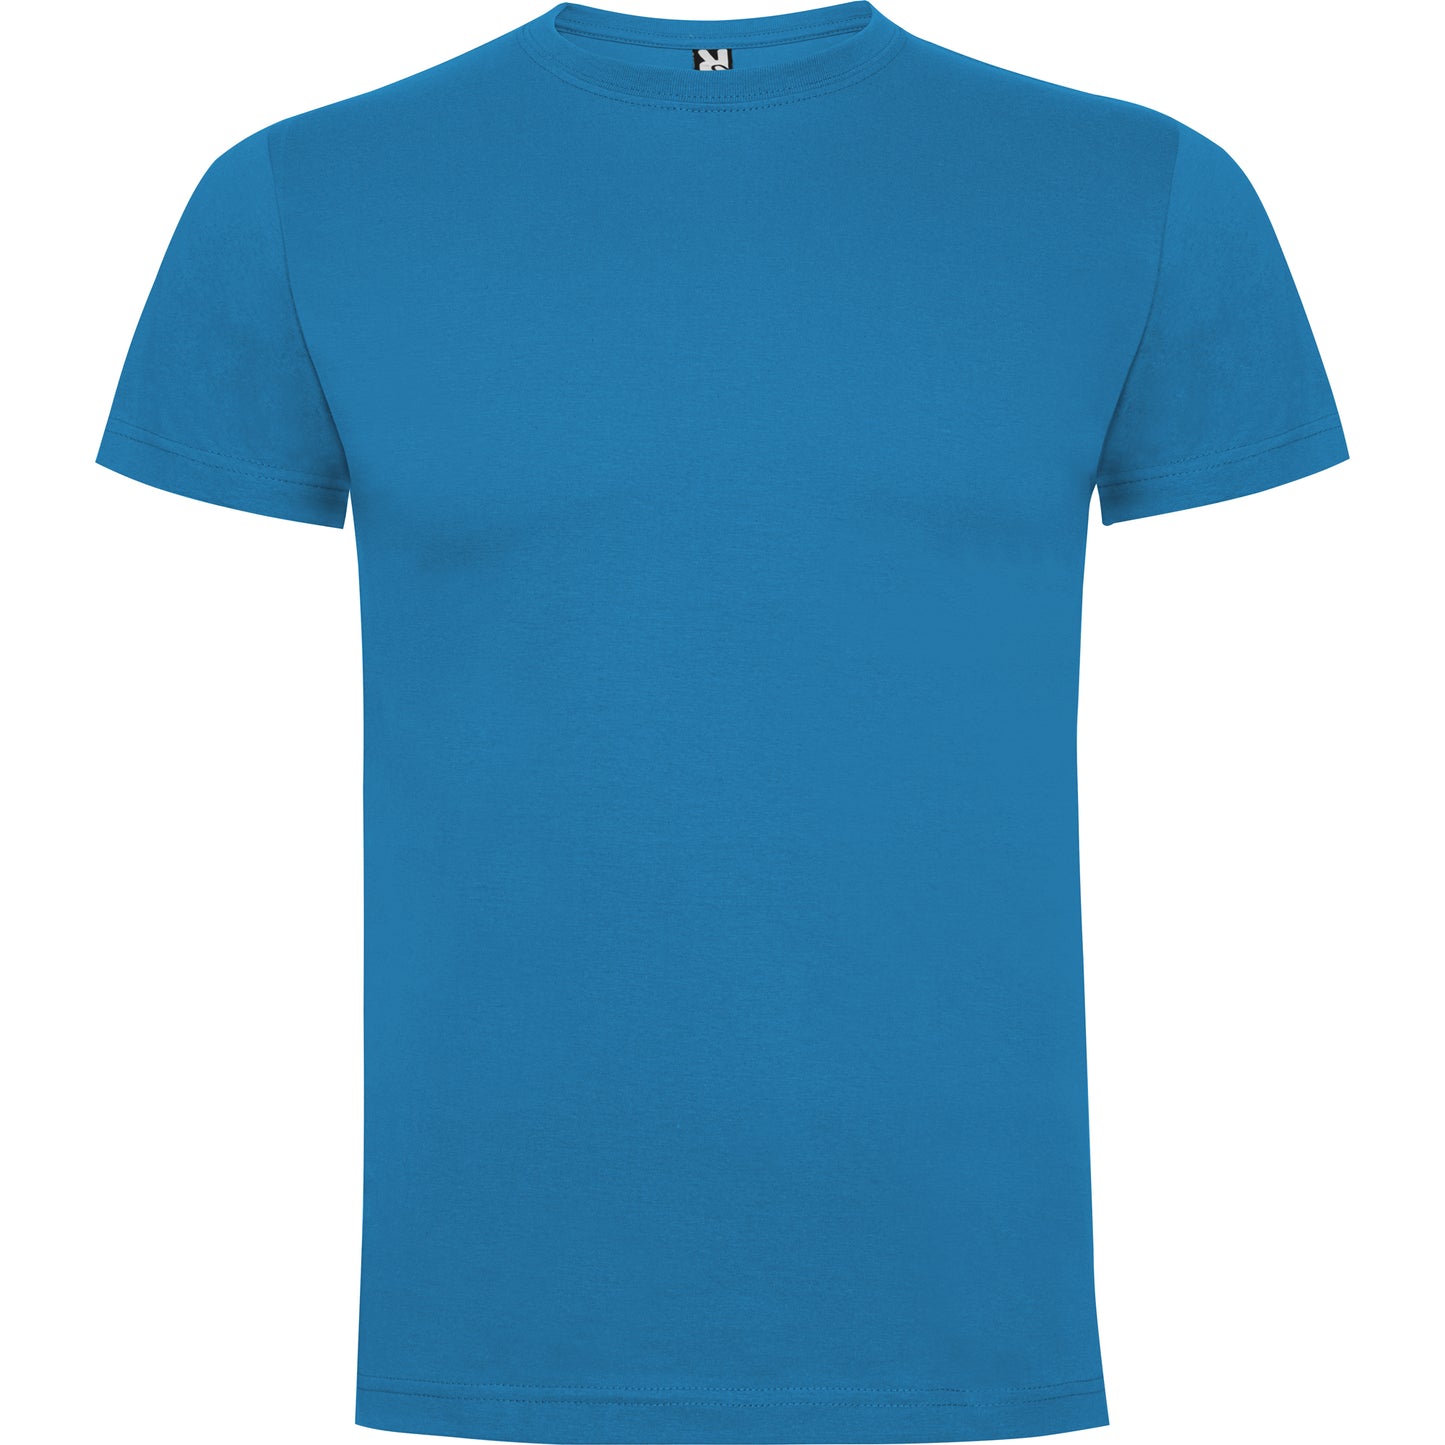 Dogo Premium T-shirt Ocean Blue